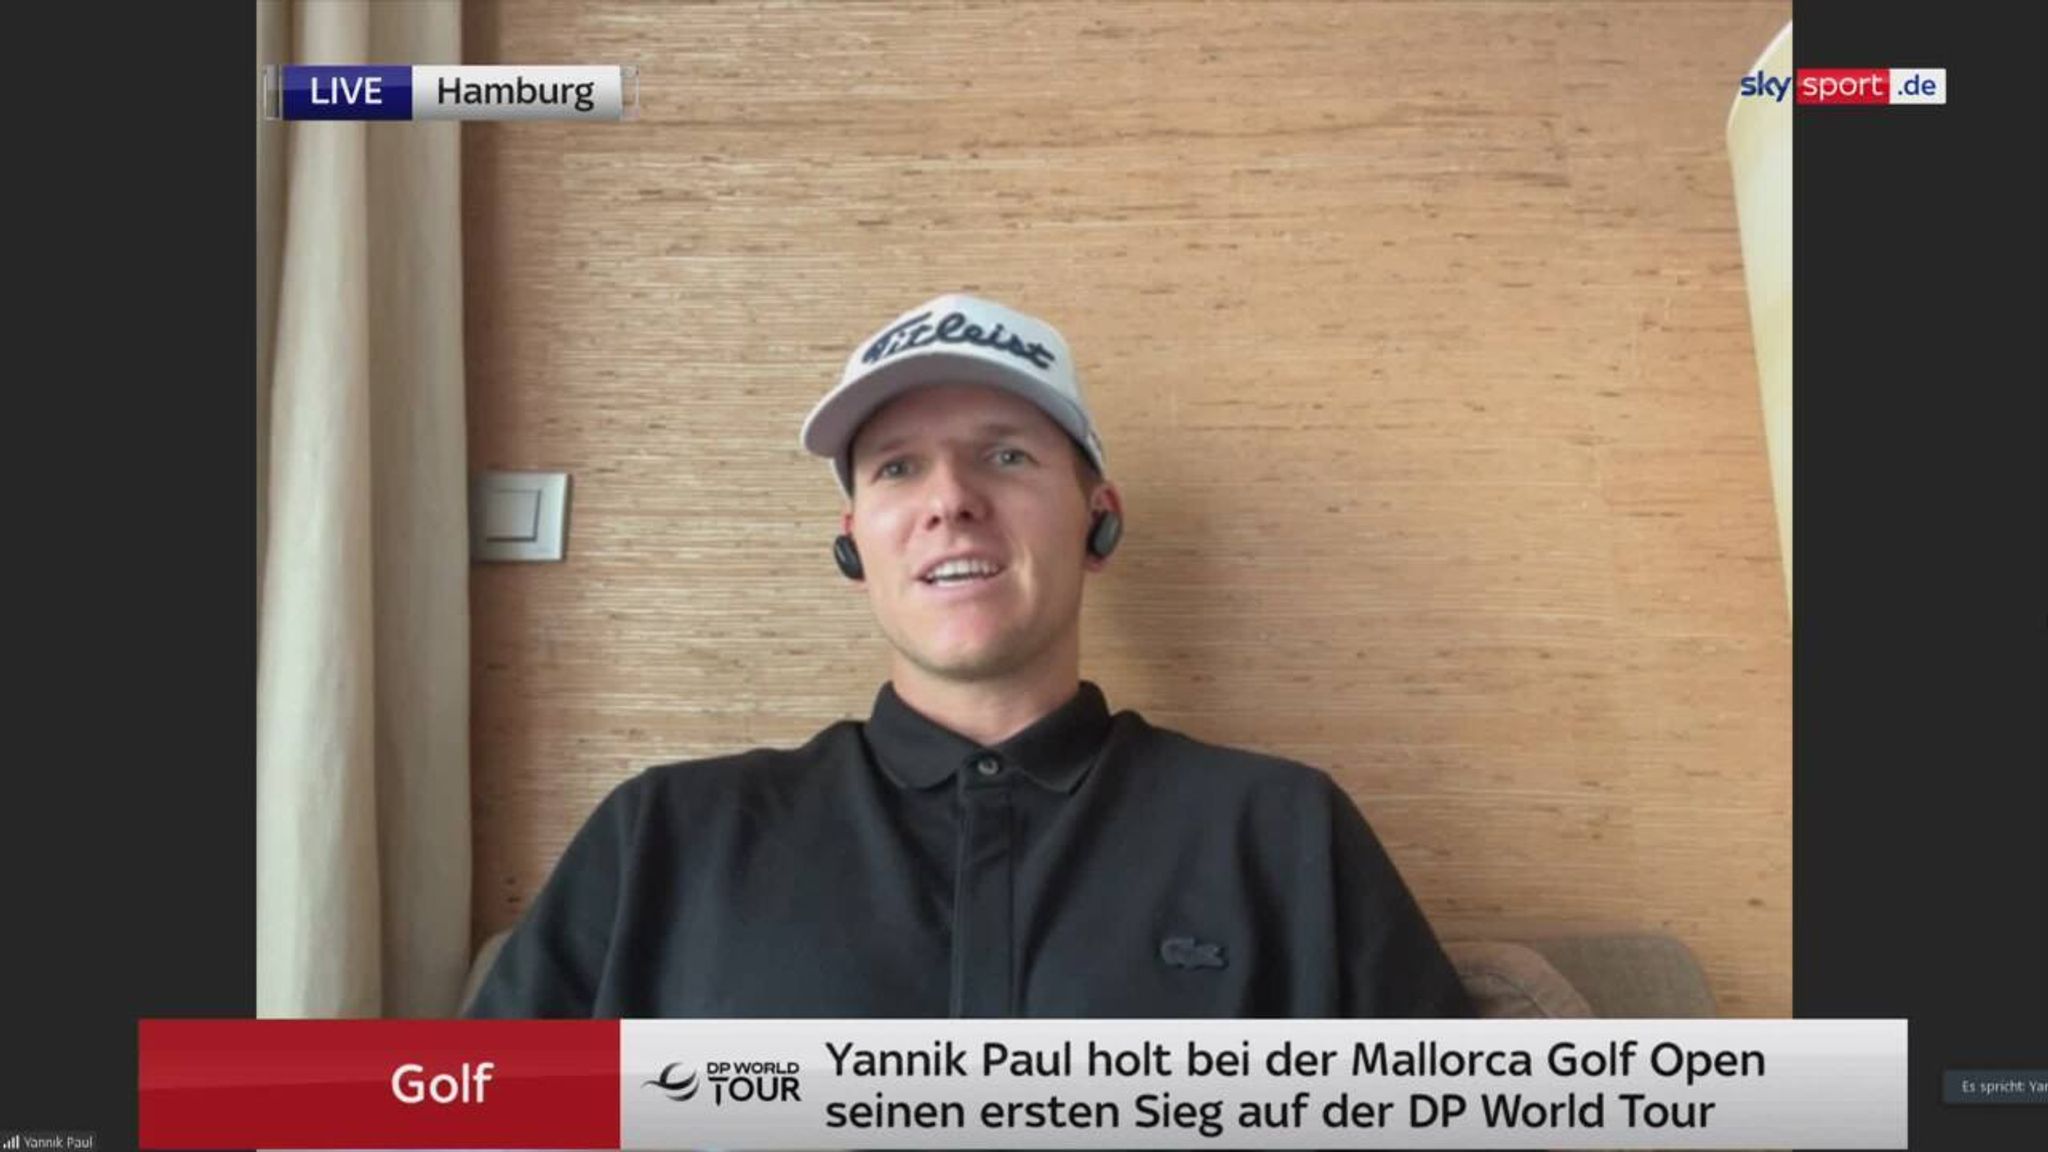 Golf Yannik Paul spricht im Interview über seinen ersten Sieg auf der DP World Tour Golf News Sky Sport